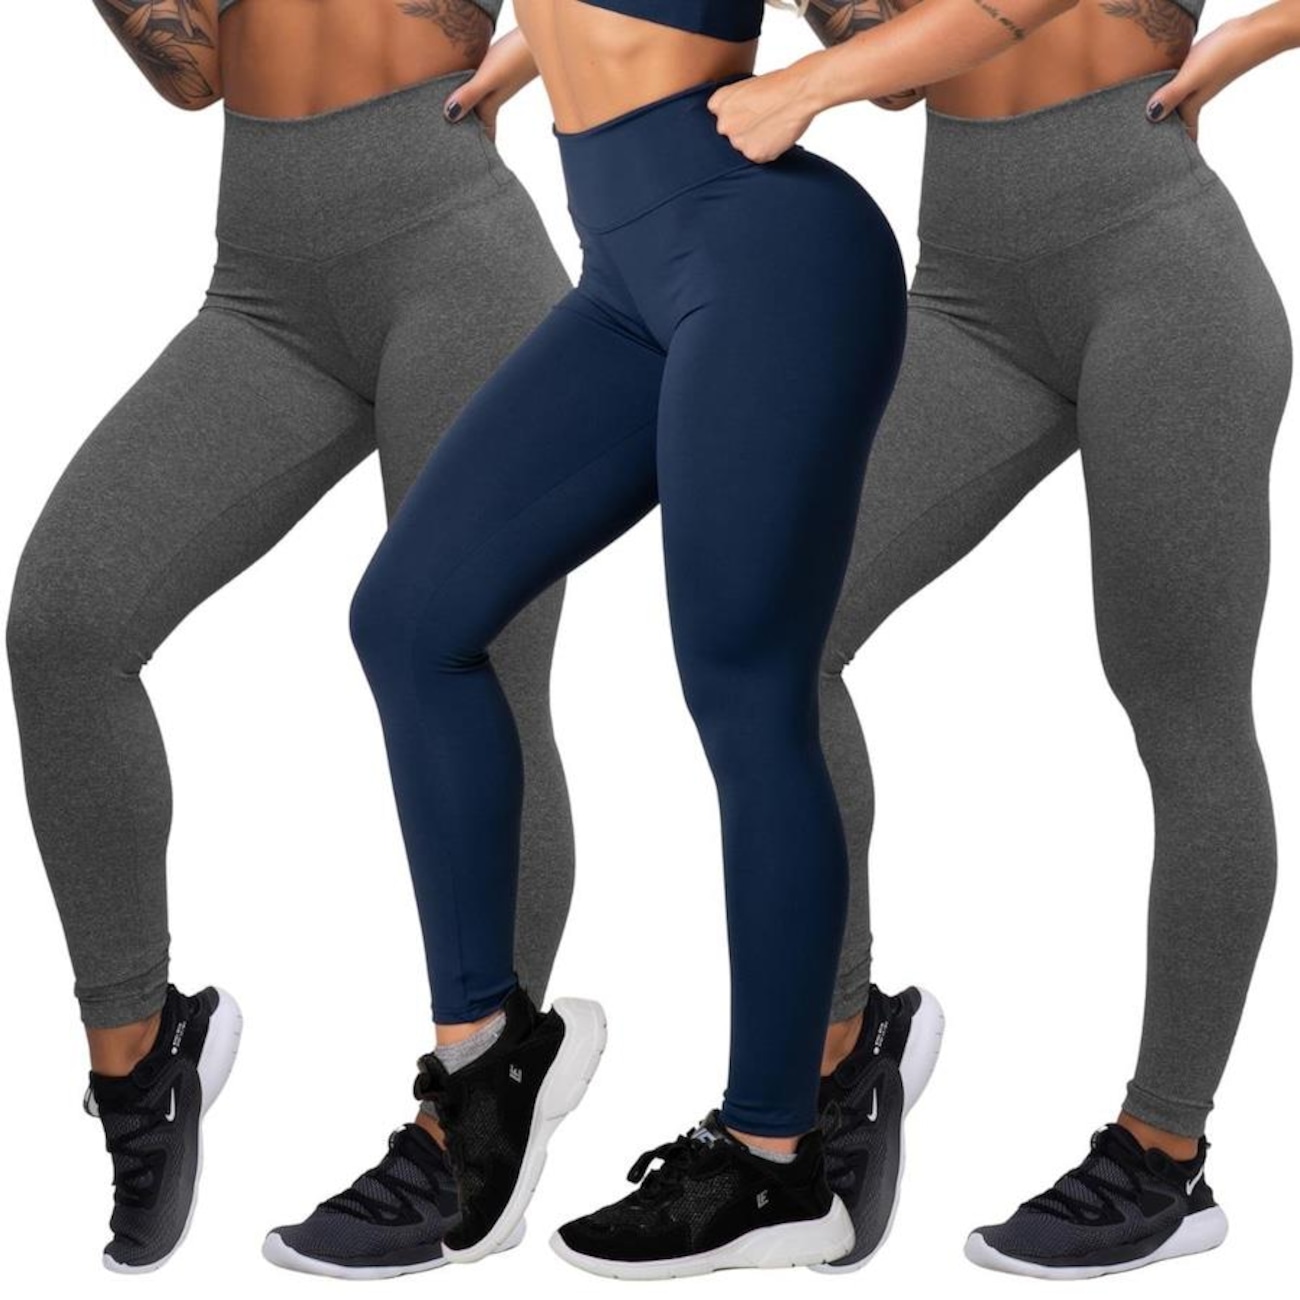 Kit calça flare suplex + calça legging fitness academia - Belmento